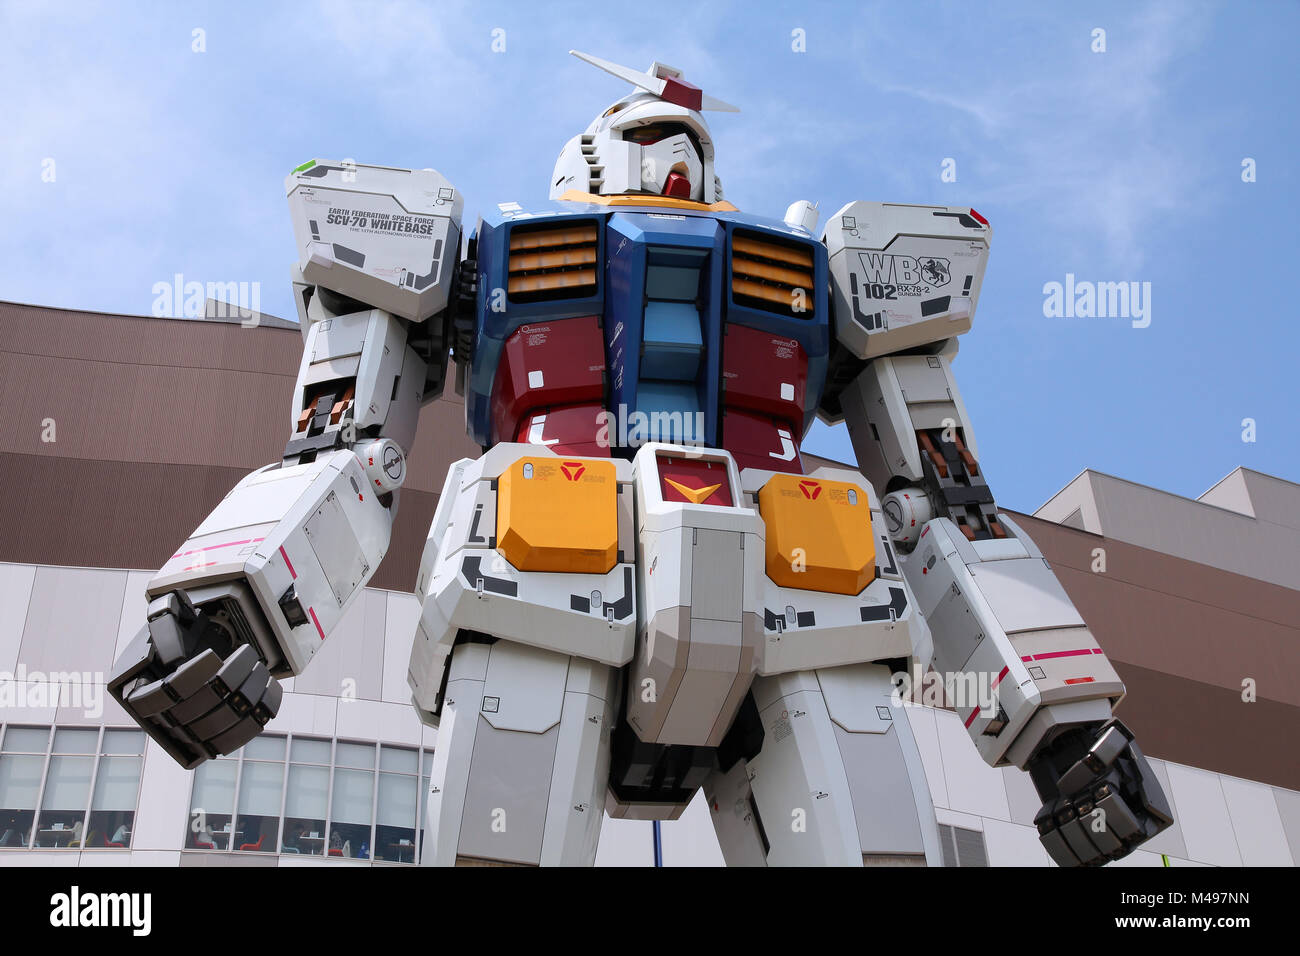 Tokio - 11. Mai: Gundam robot Replica am 11. Mai 2012 in Tokio. Die Skulptur ist 18 m hoch und ist die größte Nachbildung des berühmten Anime franchise Roboter, G Stockfoto